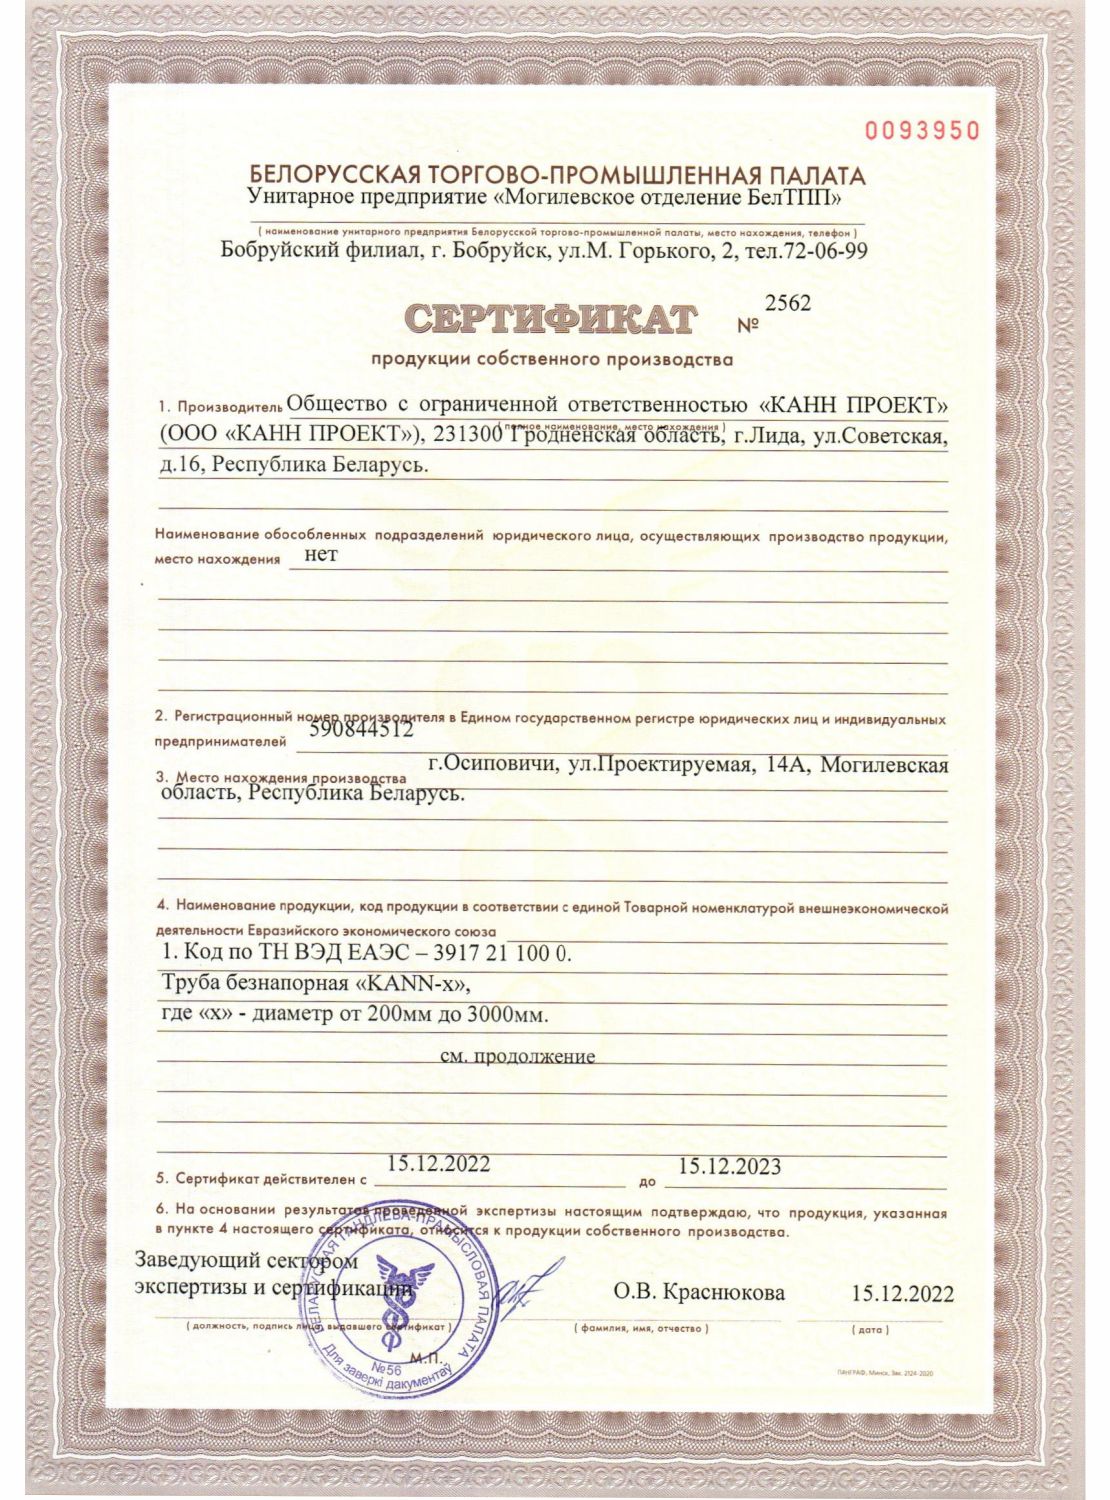 Сертификаты ООО "КАНН ПРОЕКТ"